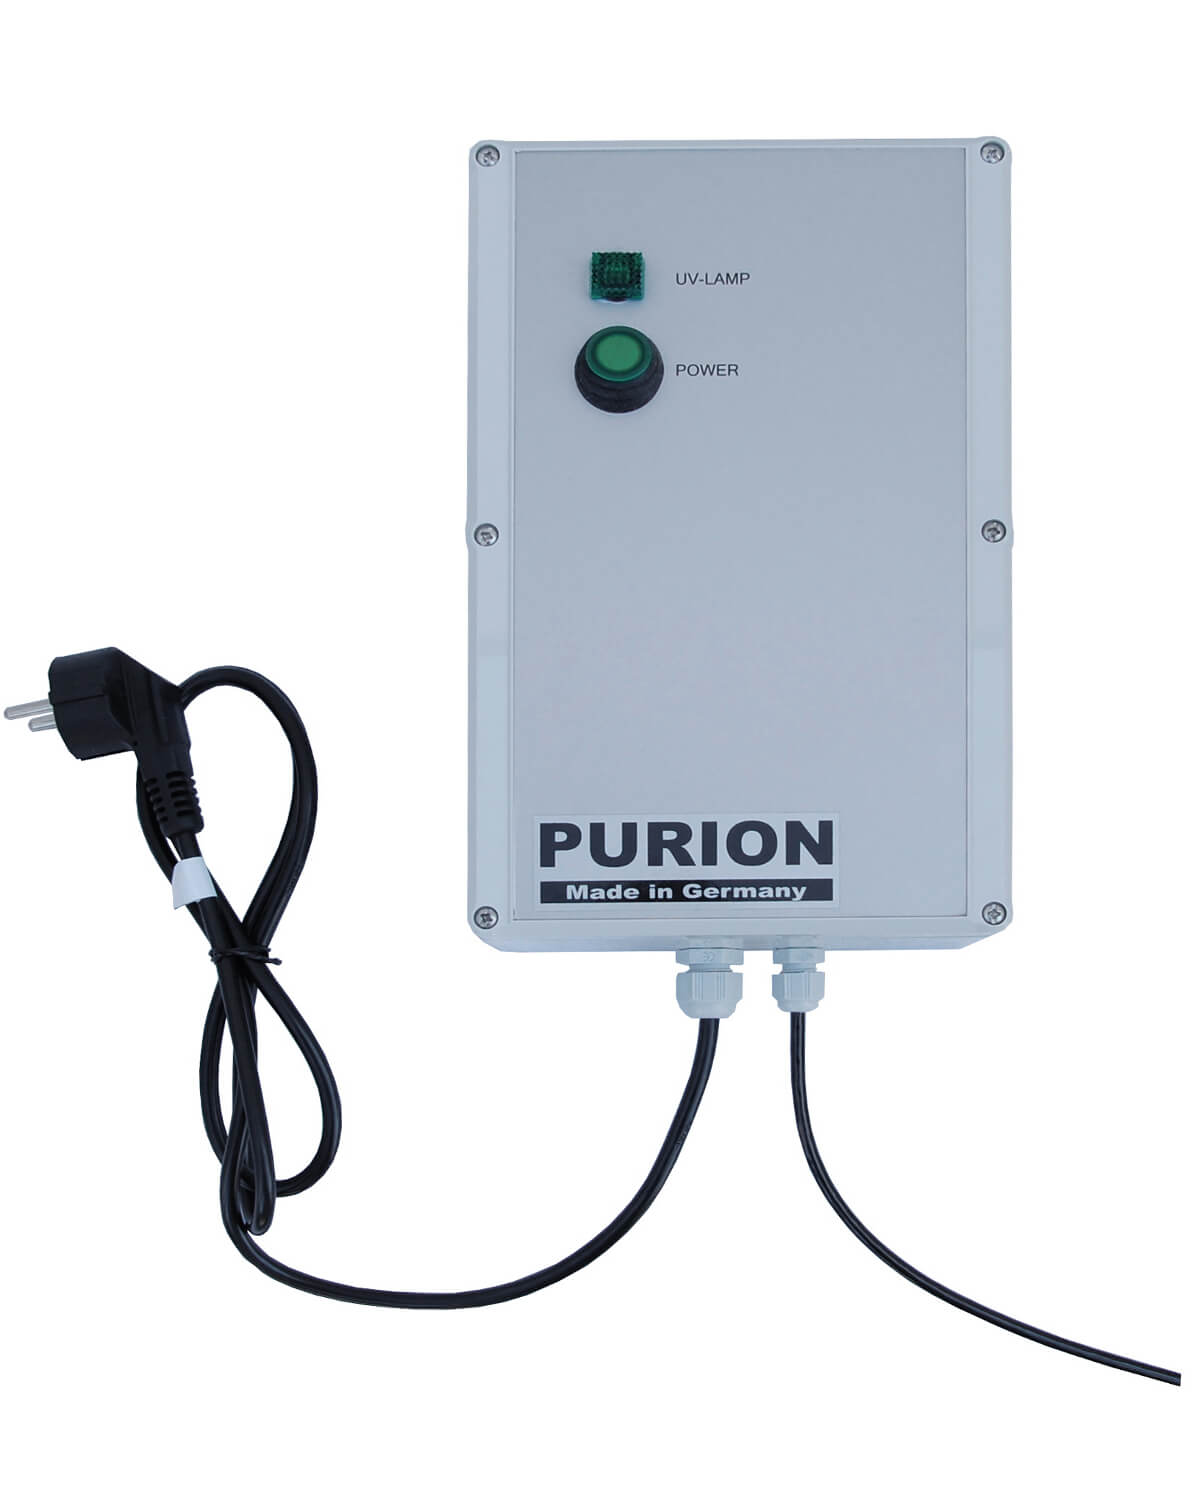 Der Pool ist anfällig für Algenbefall und erfordert daher eine UV-C-Desinfektionsbehandlung mit PURION 2001 Basic von der PURION GmbH, um ihn sauber und sicher zu halten.